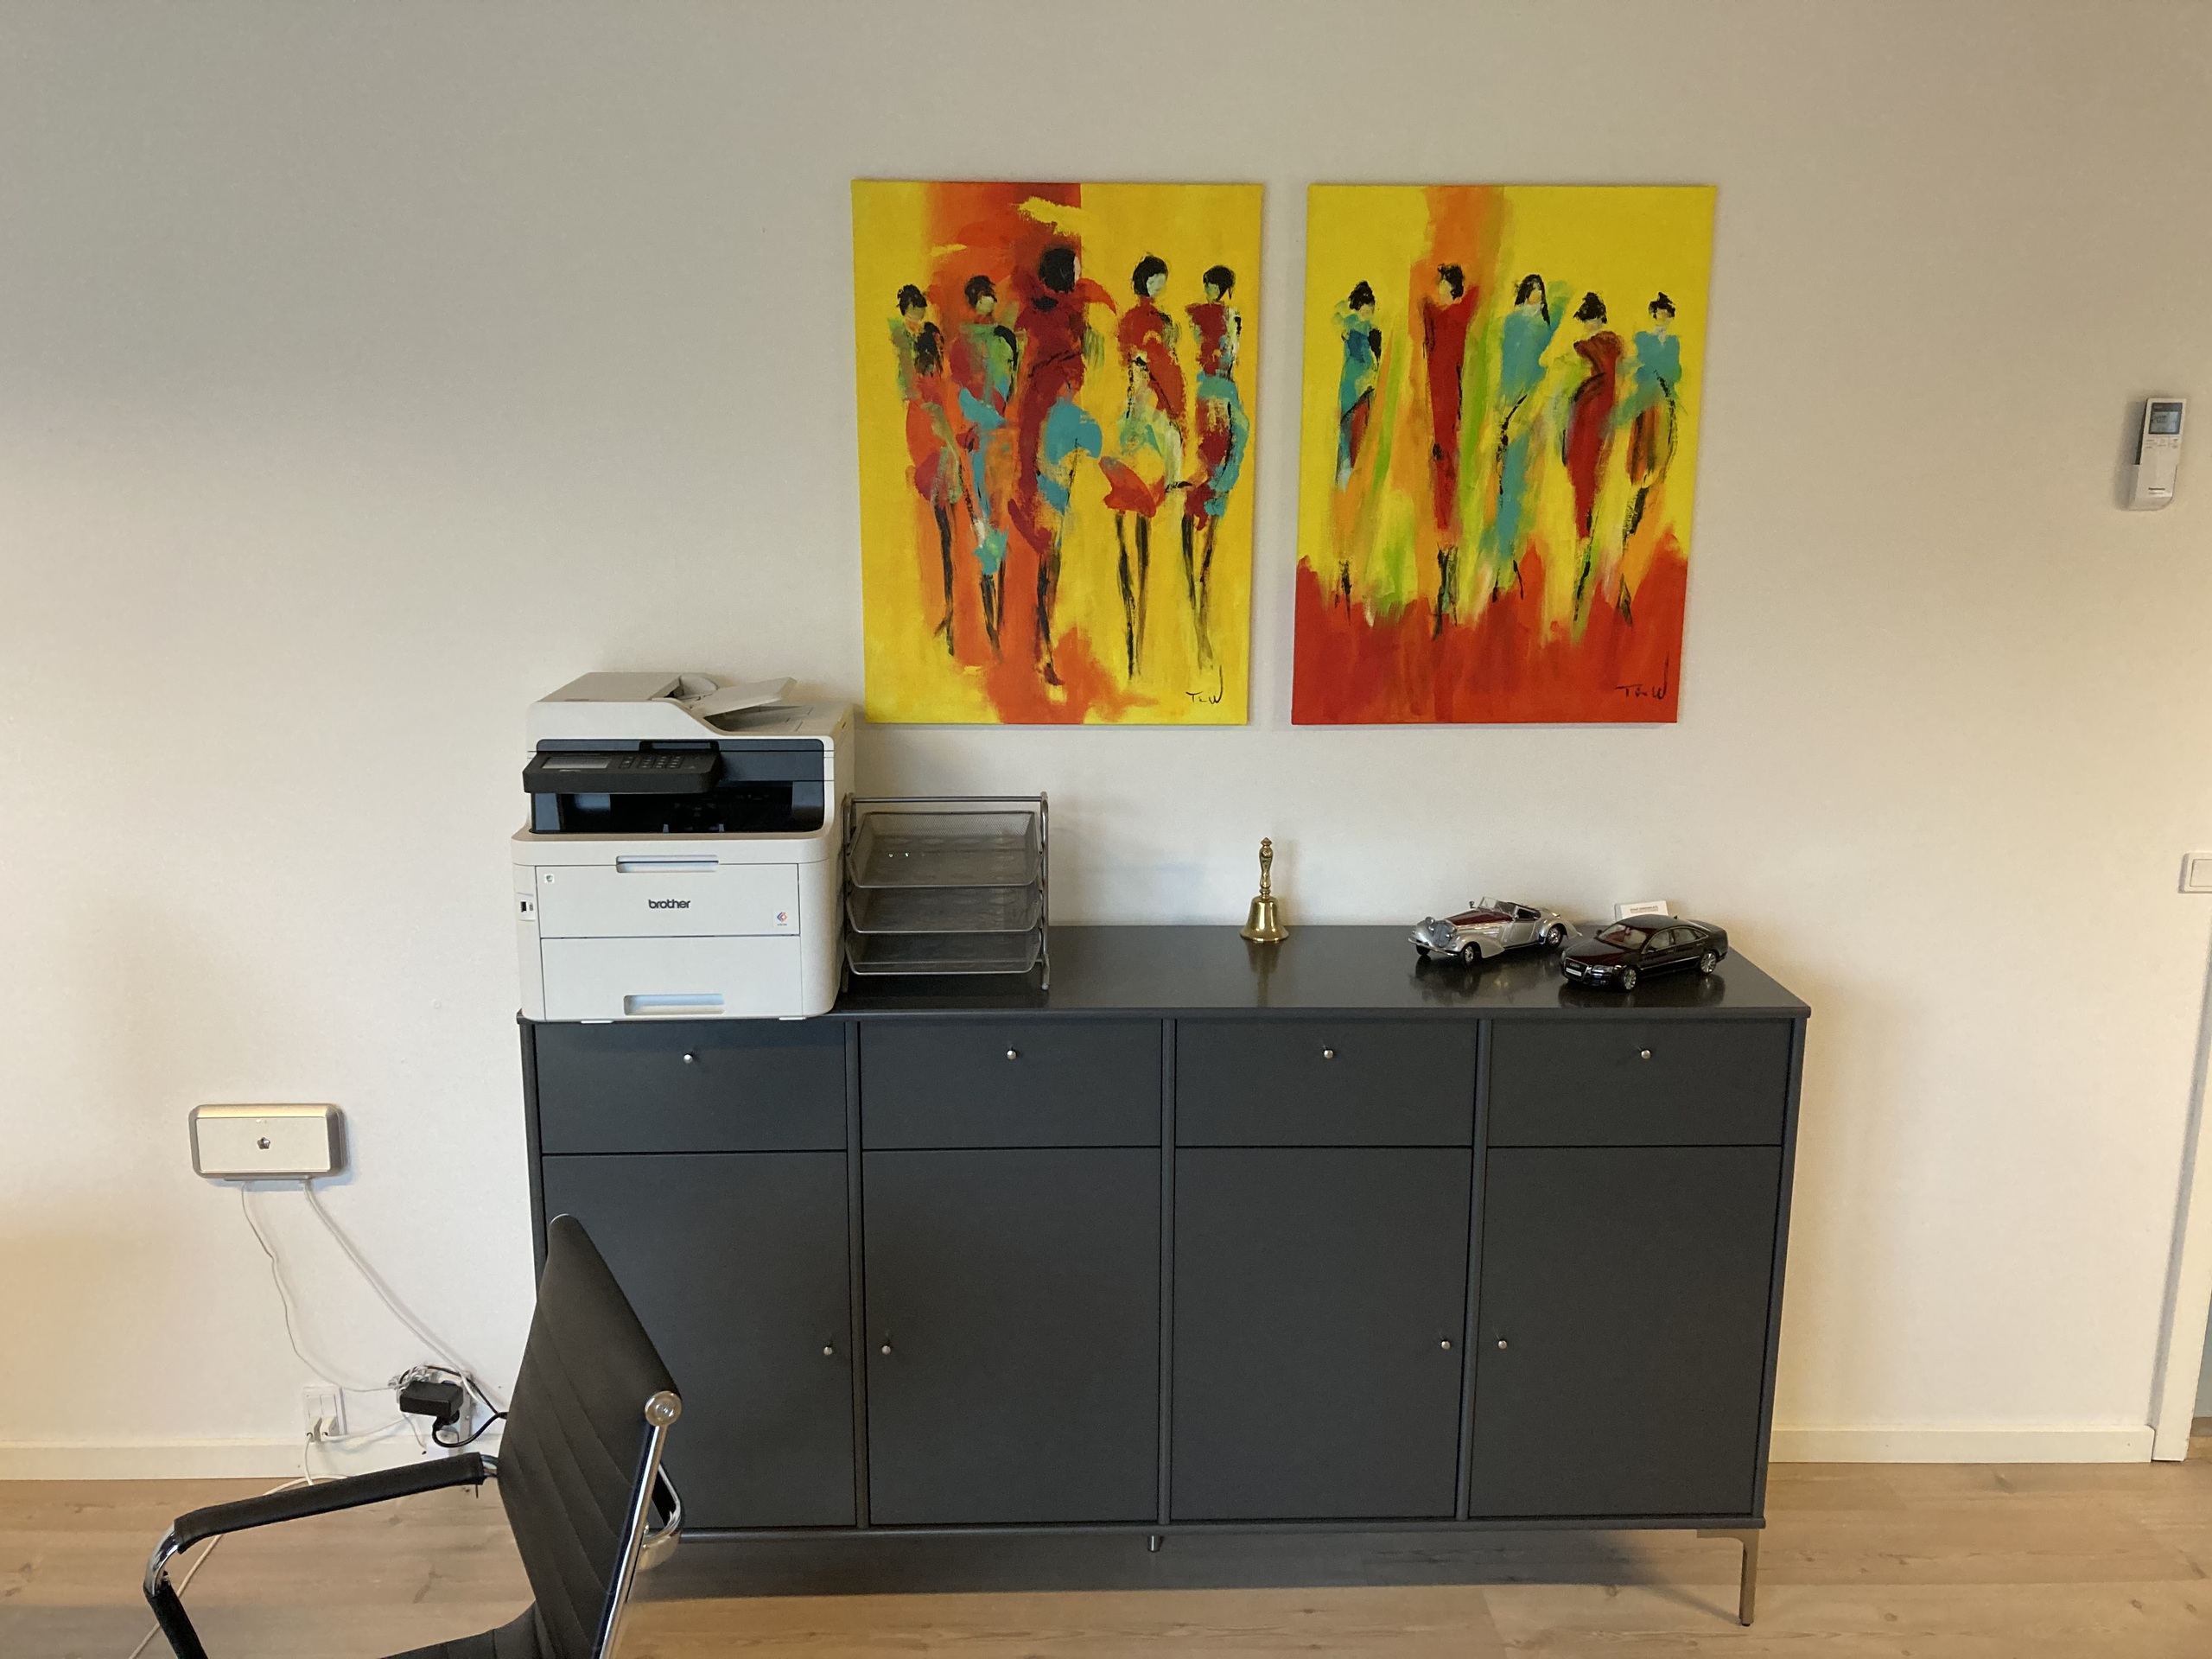 Få malerier der passer ind til dit hjem. Her har køberen valgt at leje malerier til kontoret.